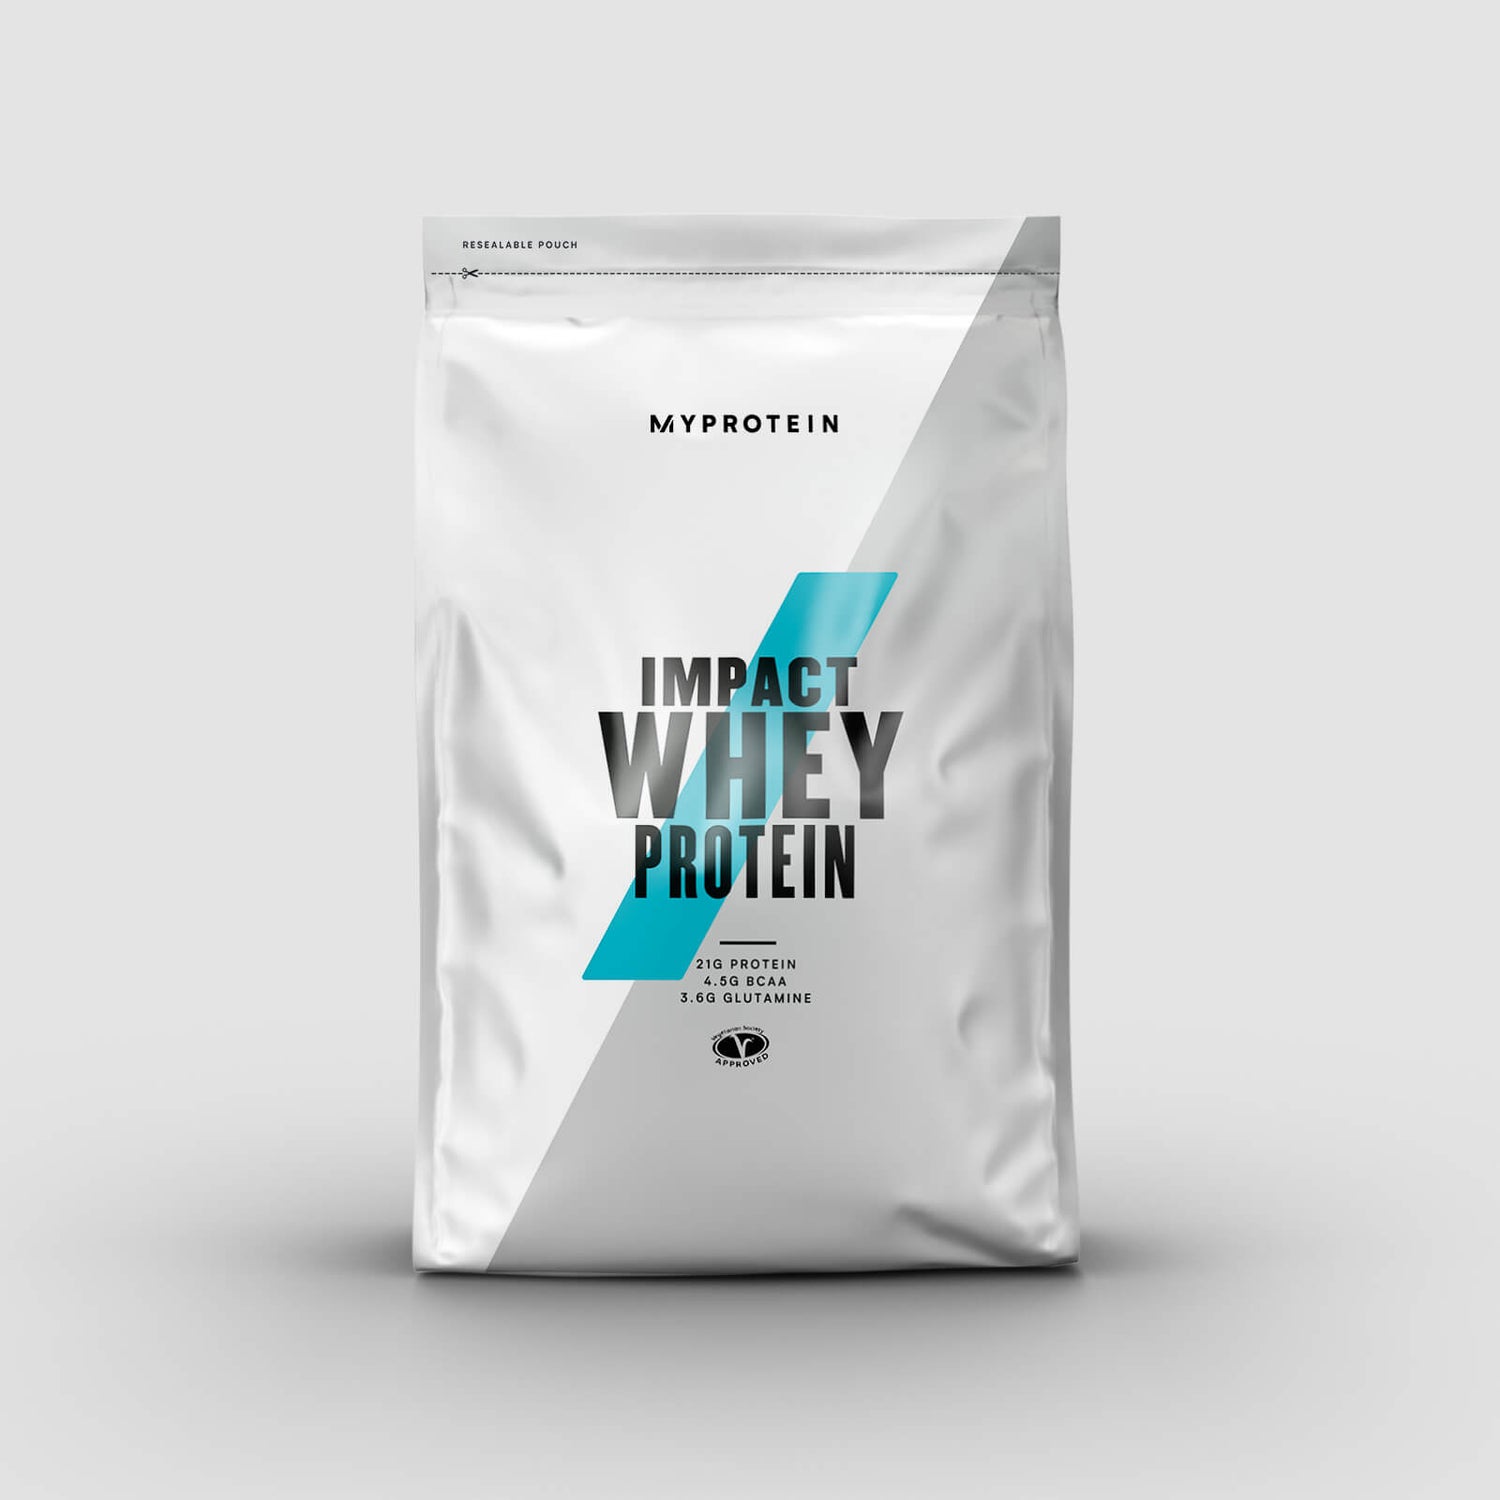 Impact Whey Protein 250g - 250g - Senza aroma